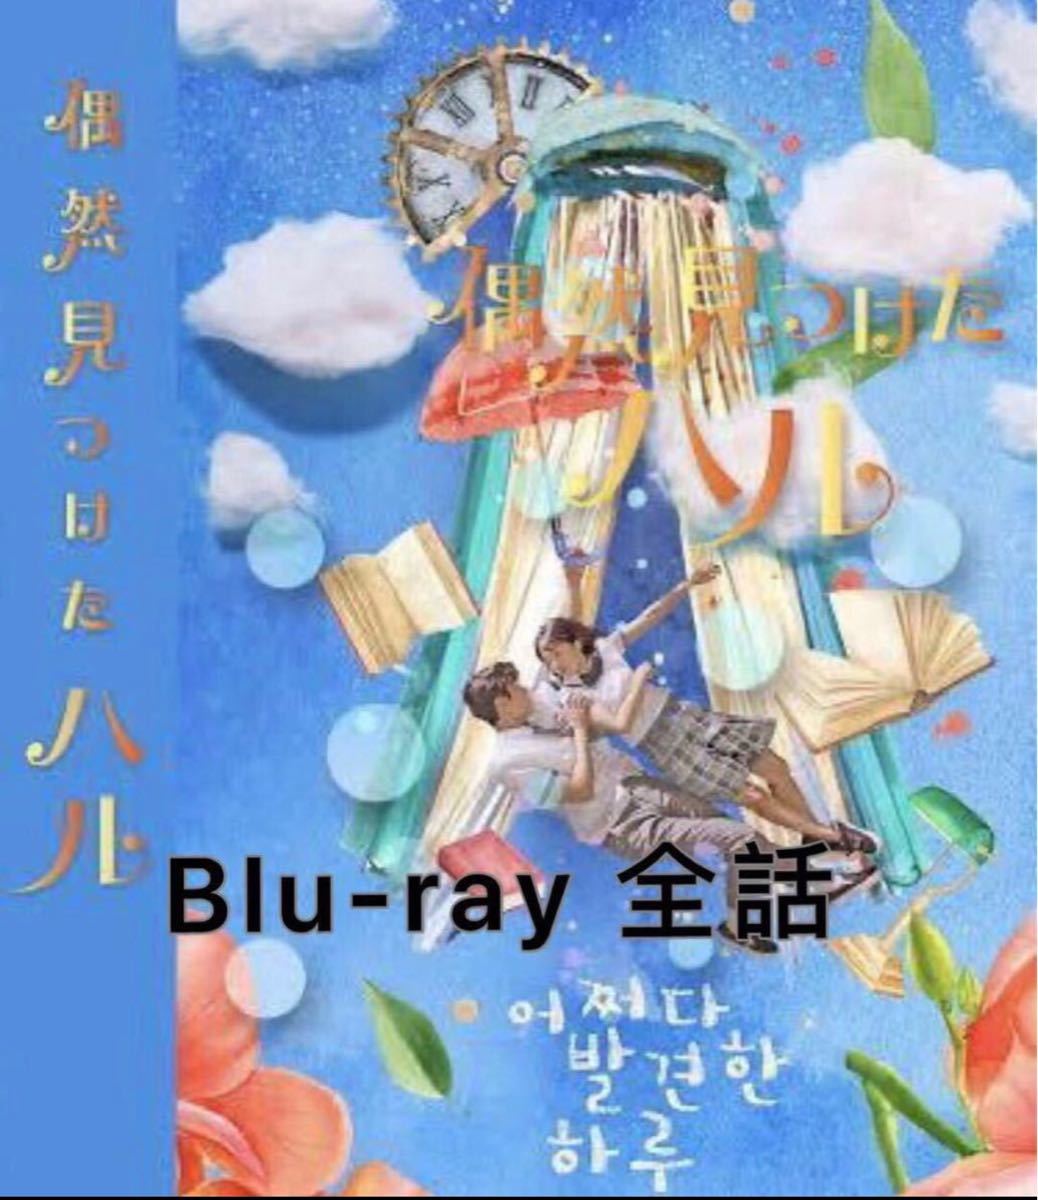 韓国ドラマ【偶然見つけたハル】全話収録 Blu-ray/ブルーレイ 